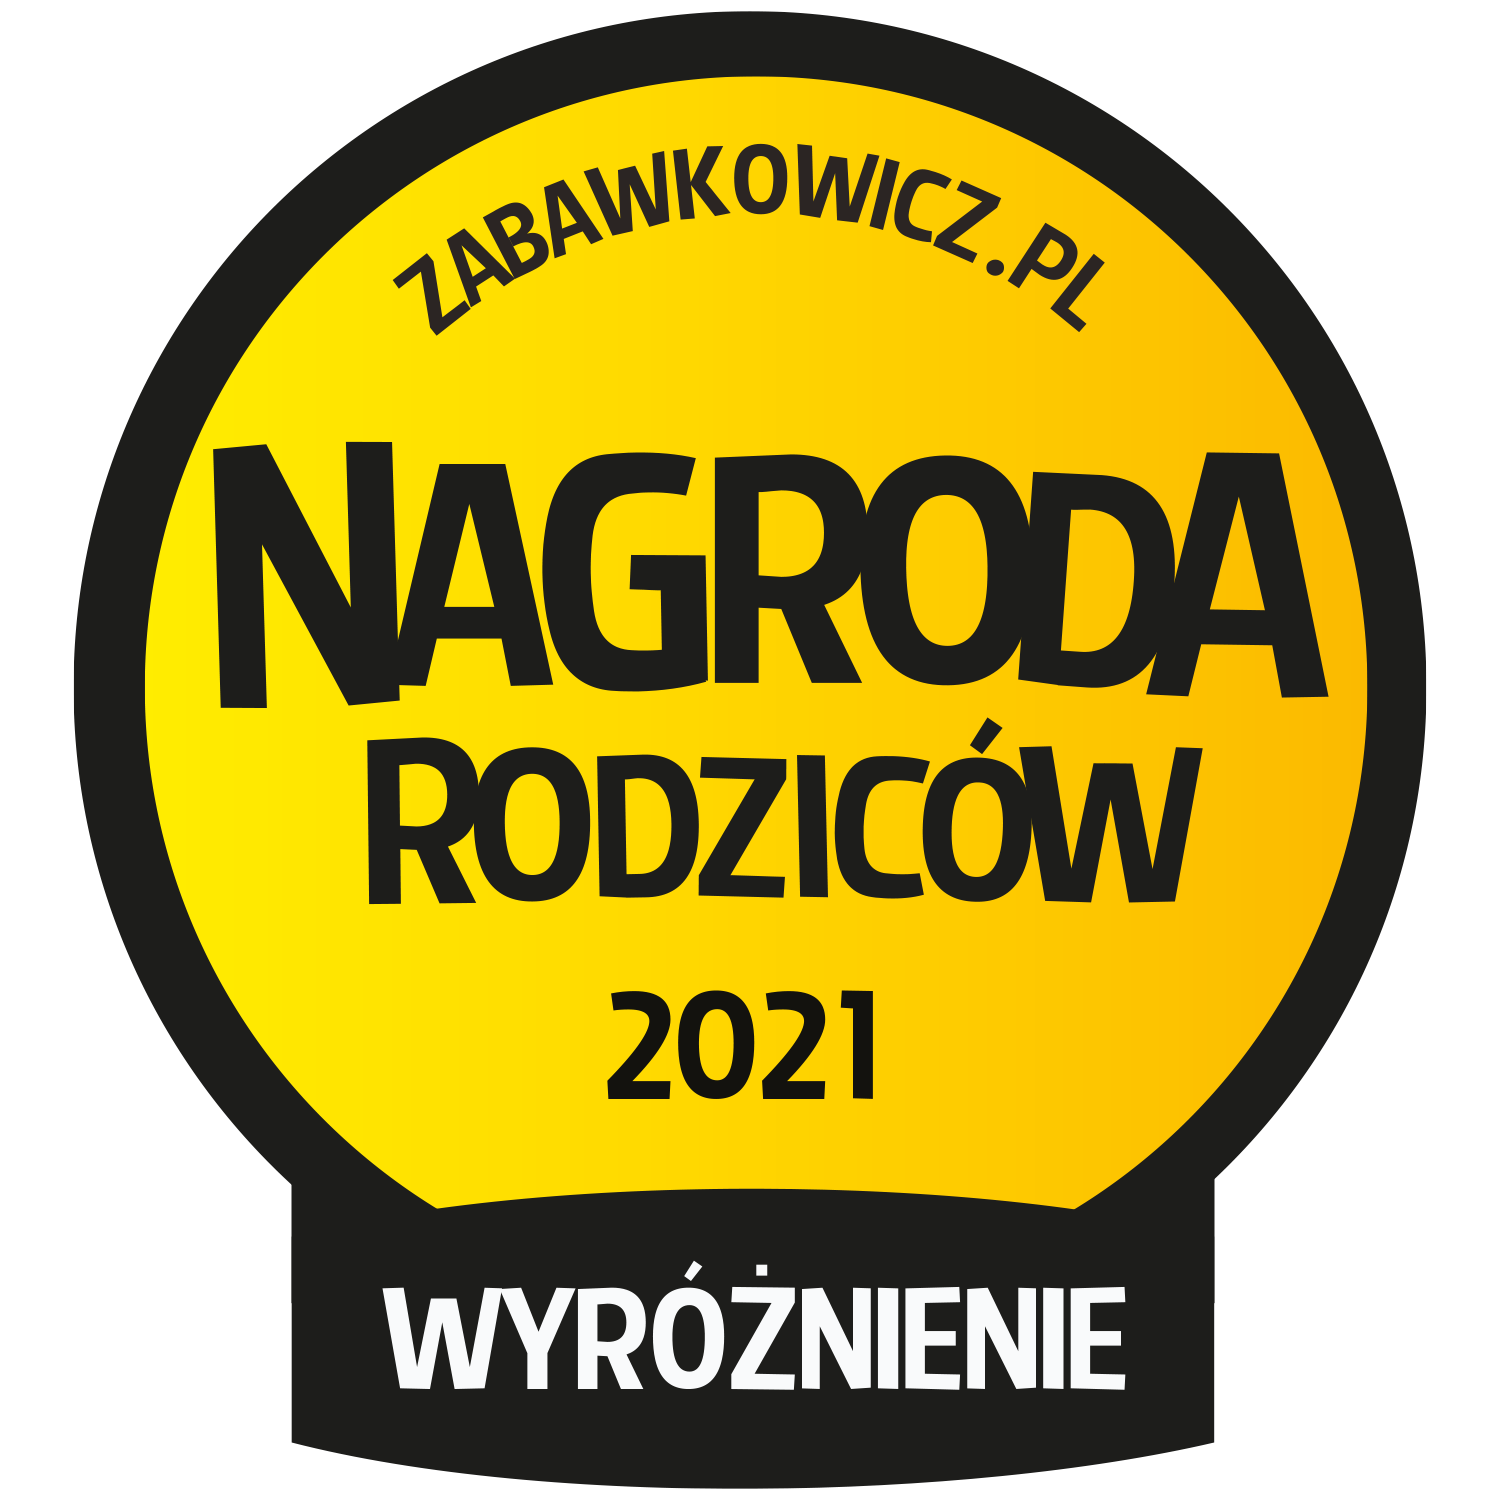 Nagroda Rodzicow Wyróżnienie 2021- logo